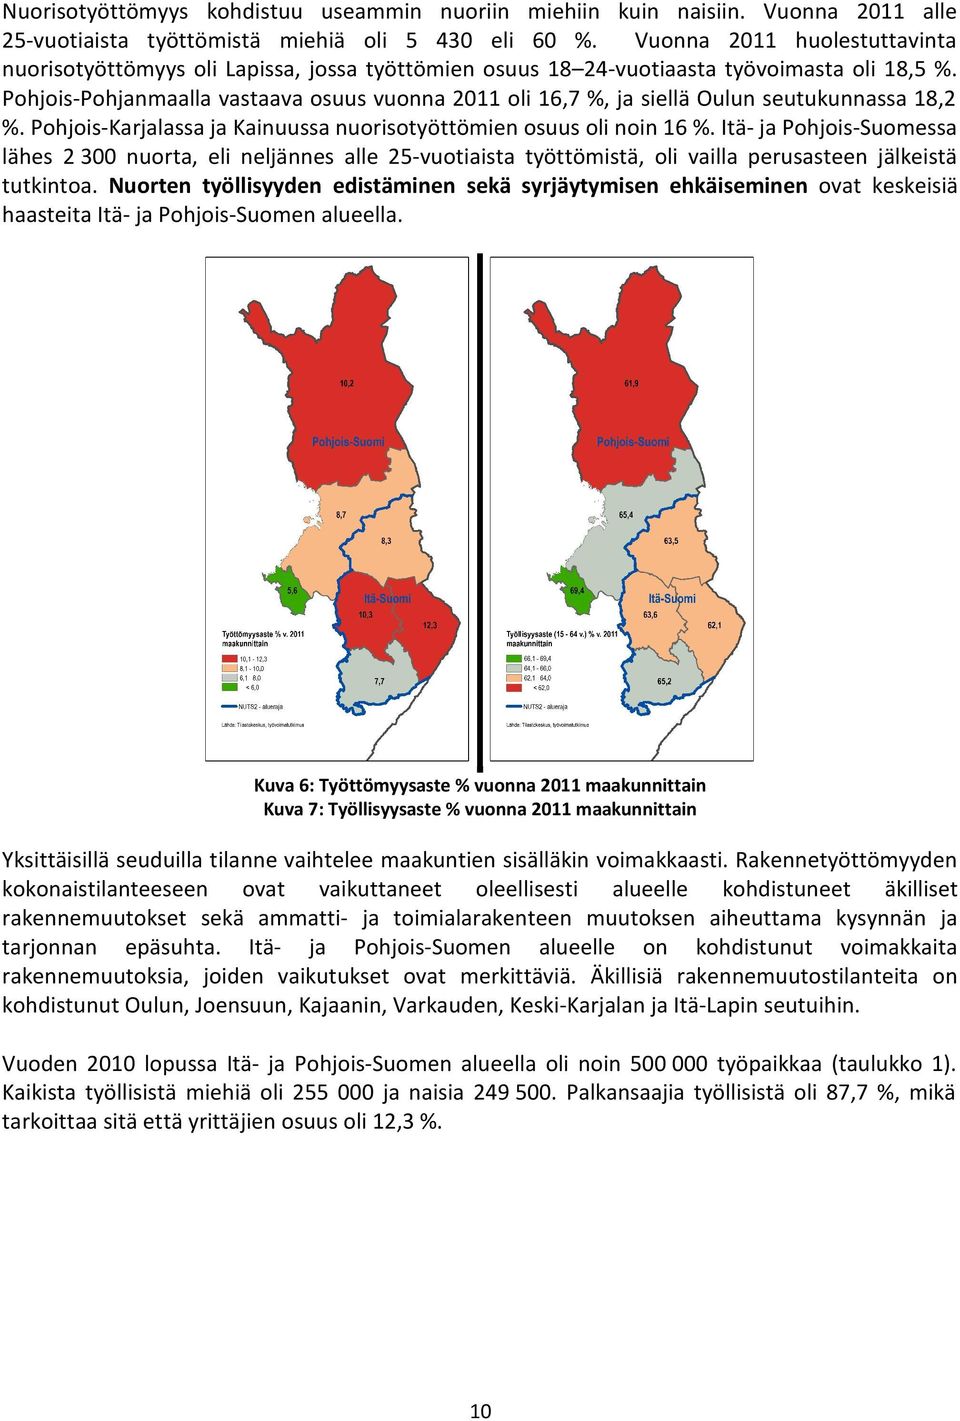 Pohjois Pohjanmaalla vastaava osuus vuonna 2011 oli 16,7 %, ja siellä Oulun seutukunnassa 18,2 %. Pohjois Karjalassa ja Kainuussa nuorisotyöttömien osuus oli noin 16 %.